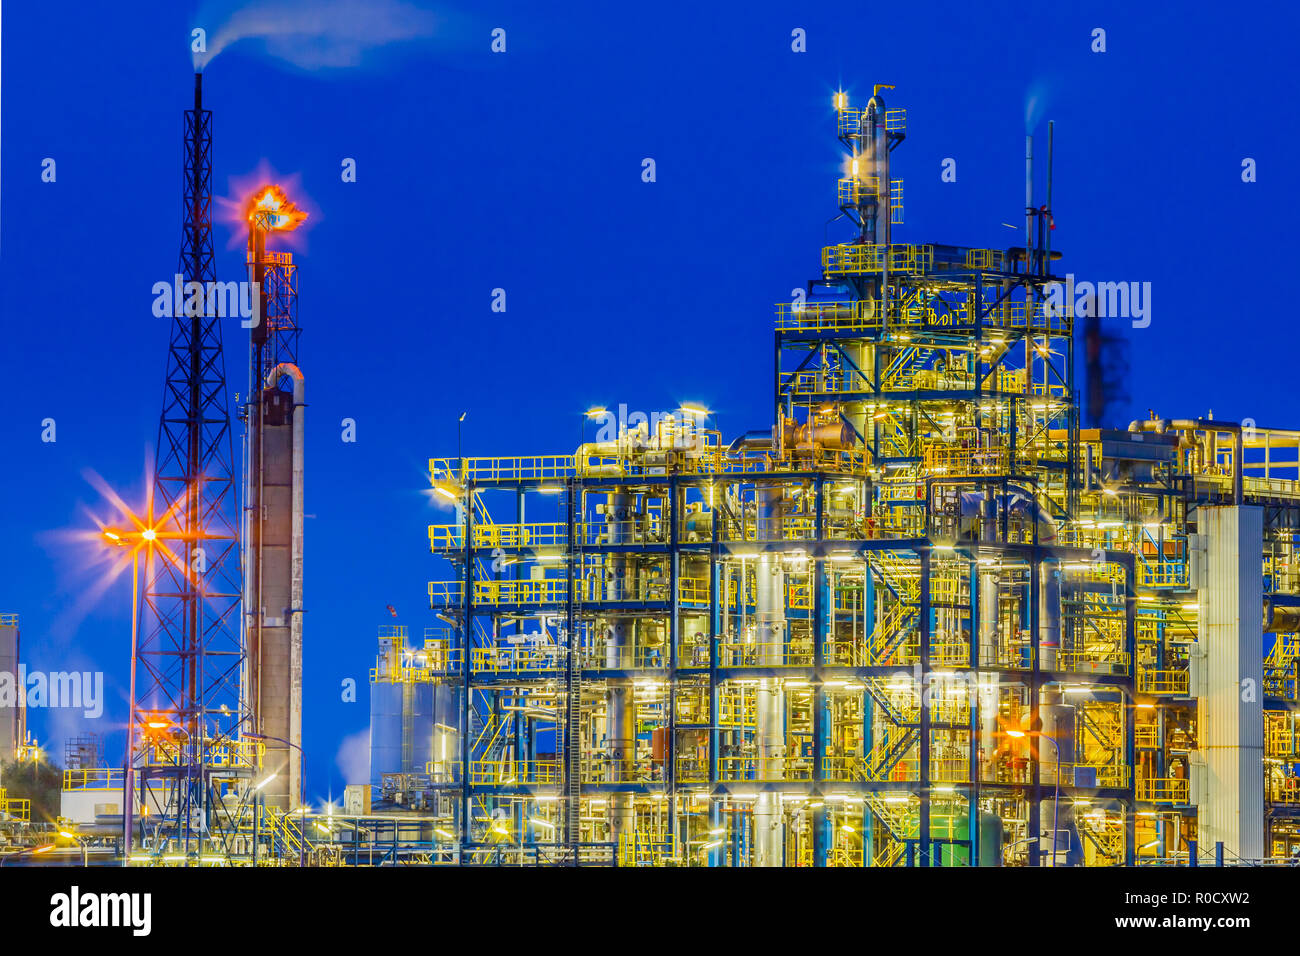 Nacht Szene eines schweren chemischen Industrieanlage Rahmen mit Labyrinth von Rohren und Leitungen während der Dämmerung Stockfoto